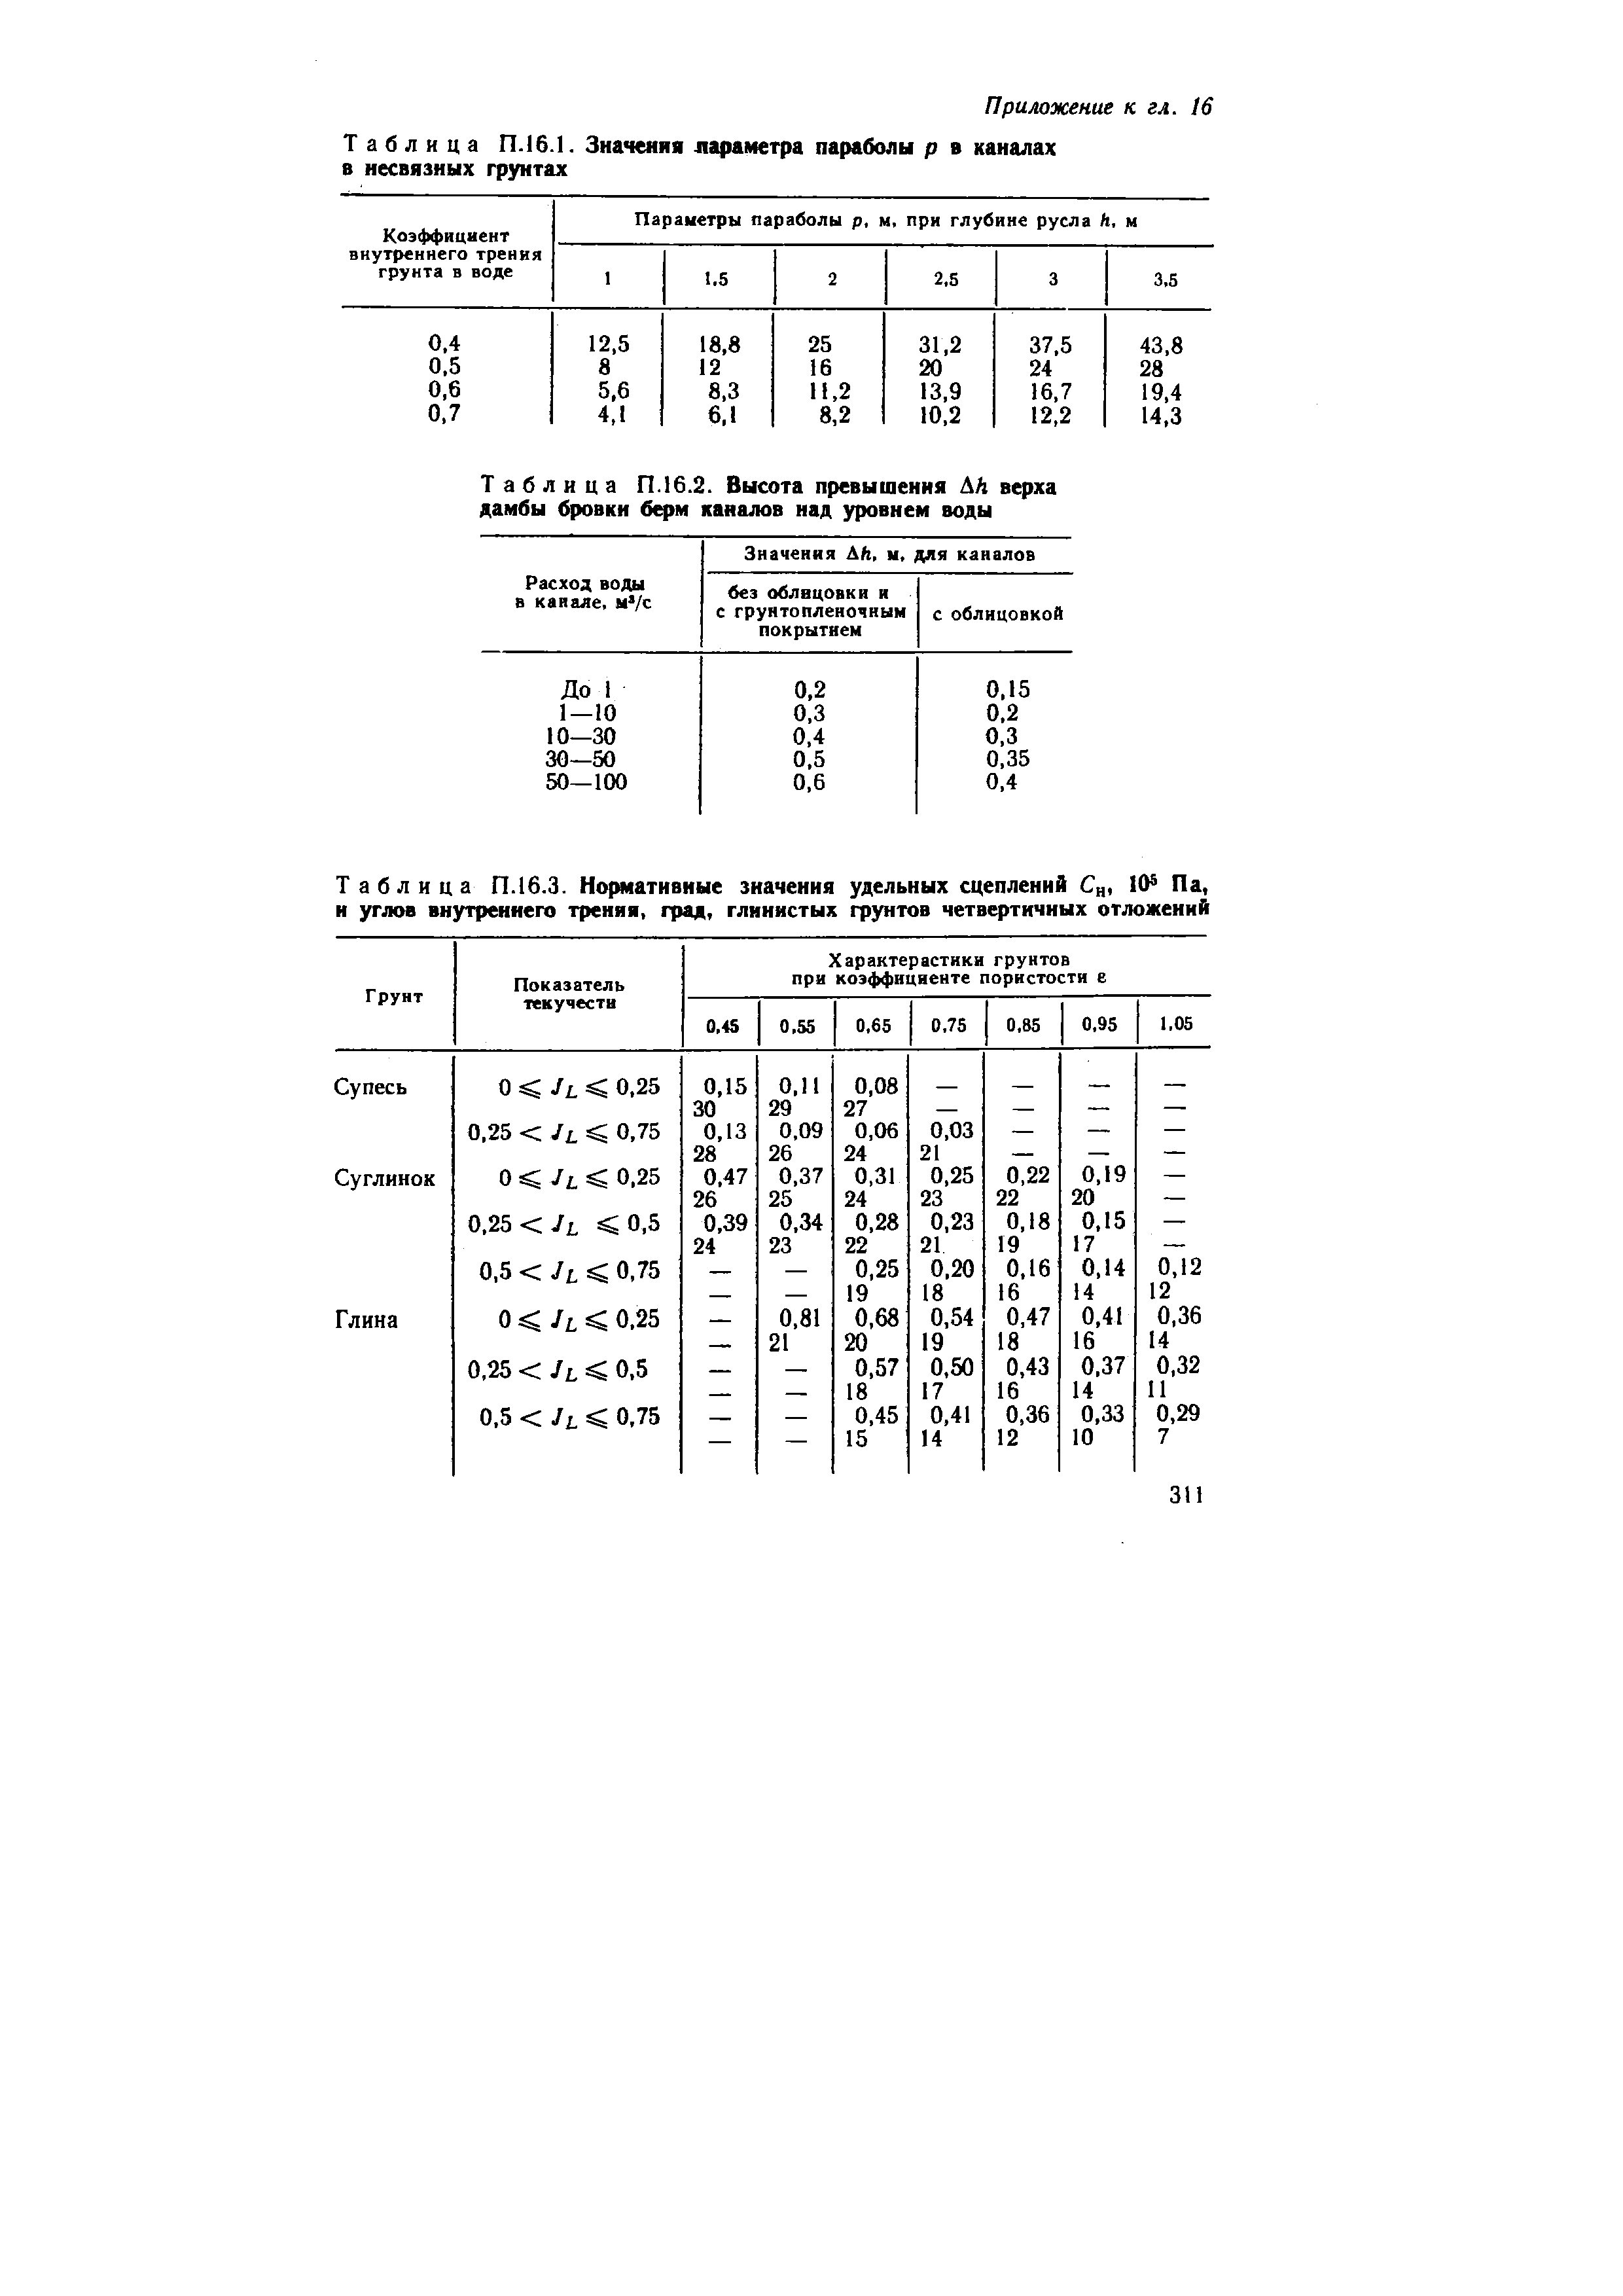 Таблица П.16.1. Значения лараметра параболы р в каналах в несвязных грунтах
